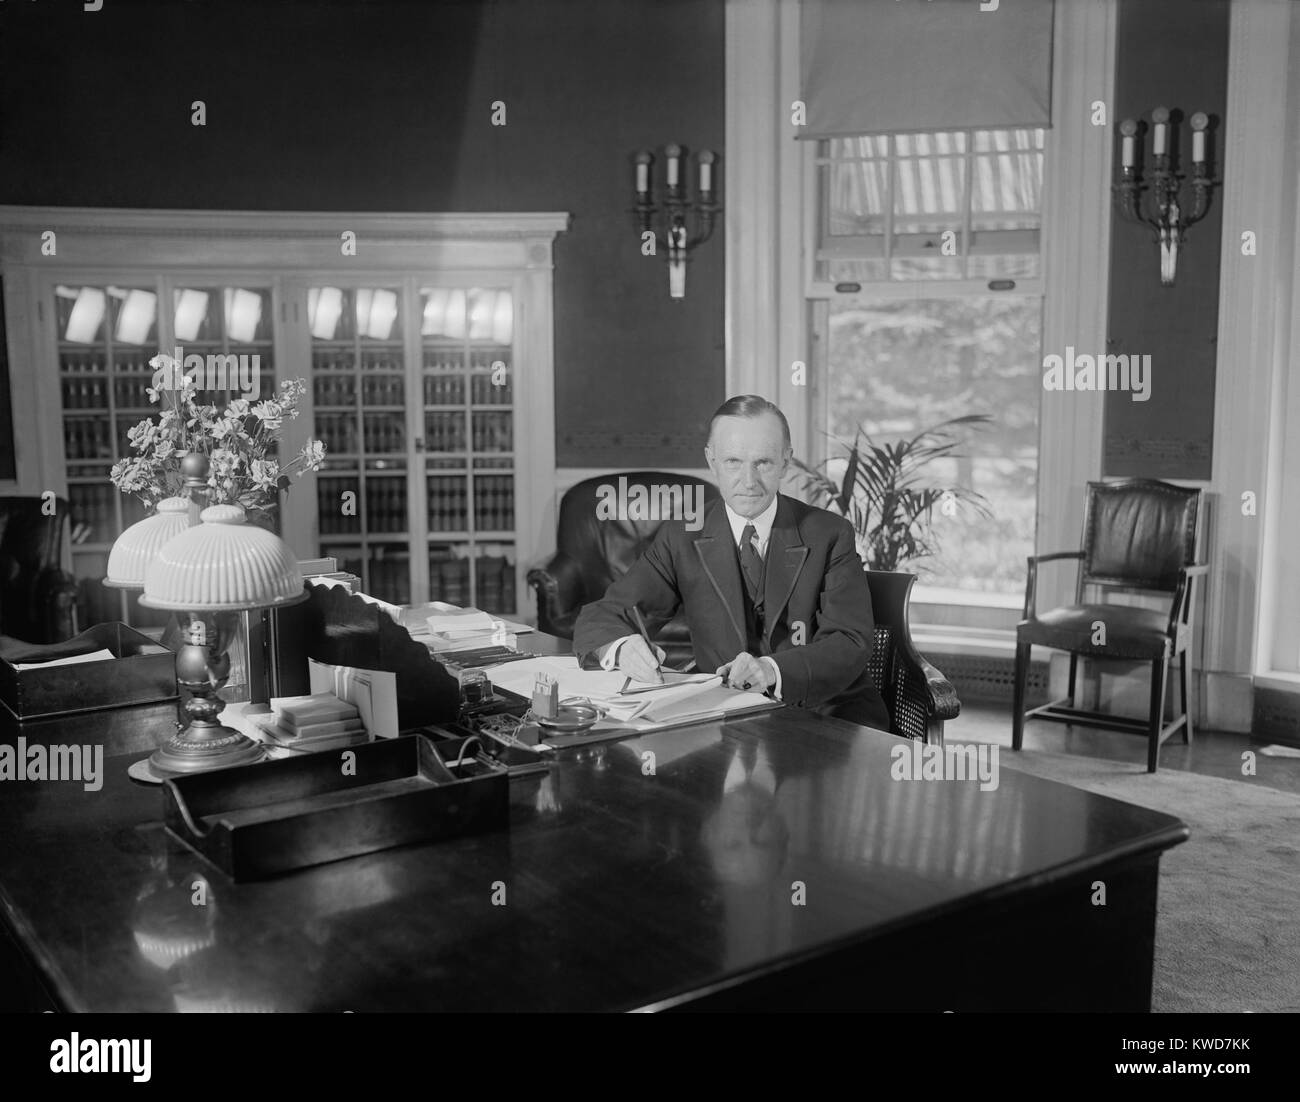 Le président Calvin Coolidge au même bureau utilisé par Harding dans le bureau ovale. Photo a été publiée le 14 août 1923, moins de deux semaines après la mort de Warren Harding. Florence Harding était contrarié que Coolidge était assis à ce bureau pour les photographes avant le corps de Warren Harding est retourné à la Maison Blanche. (BSLOC   2015 15 97) Banque D'Images